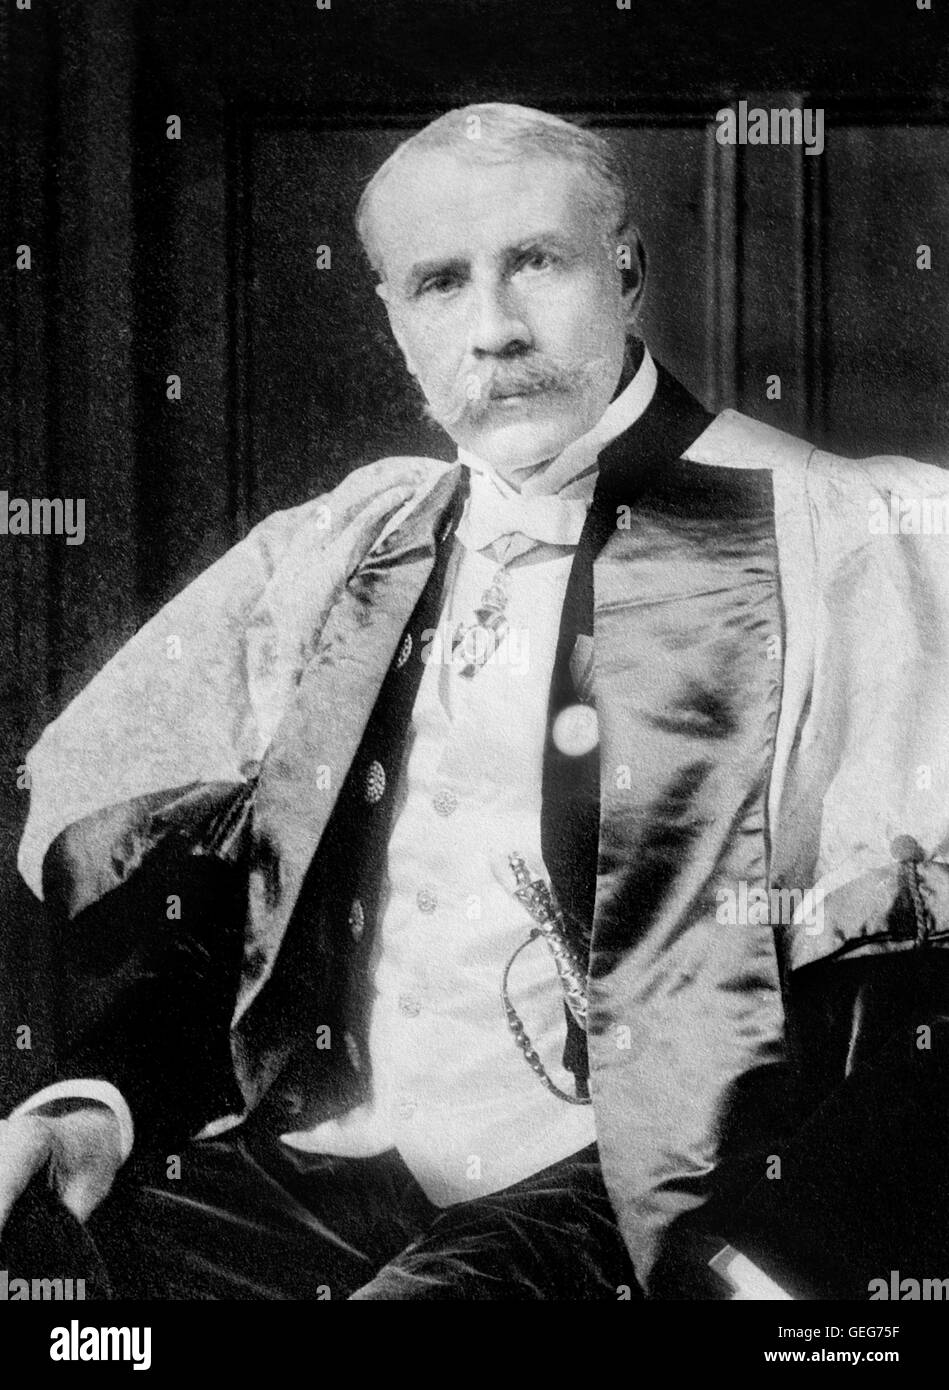 Edward Elgar. Portrait du compositeur anglais Sir Edward William Elgar (1857-1934). Photo de Bain News Service, c.1923. Banque D'Images